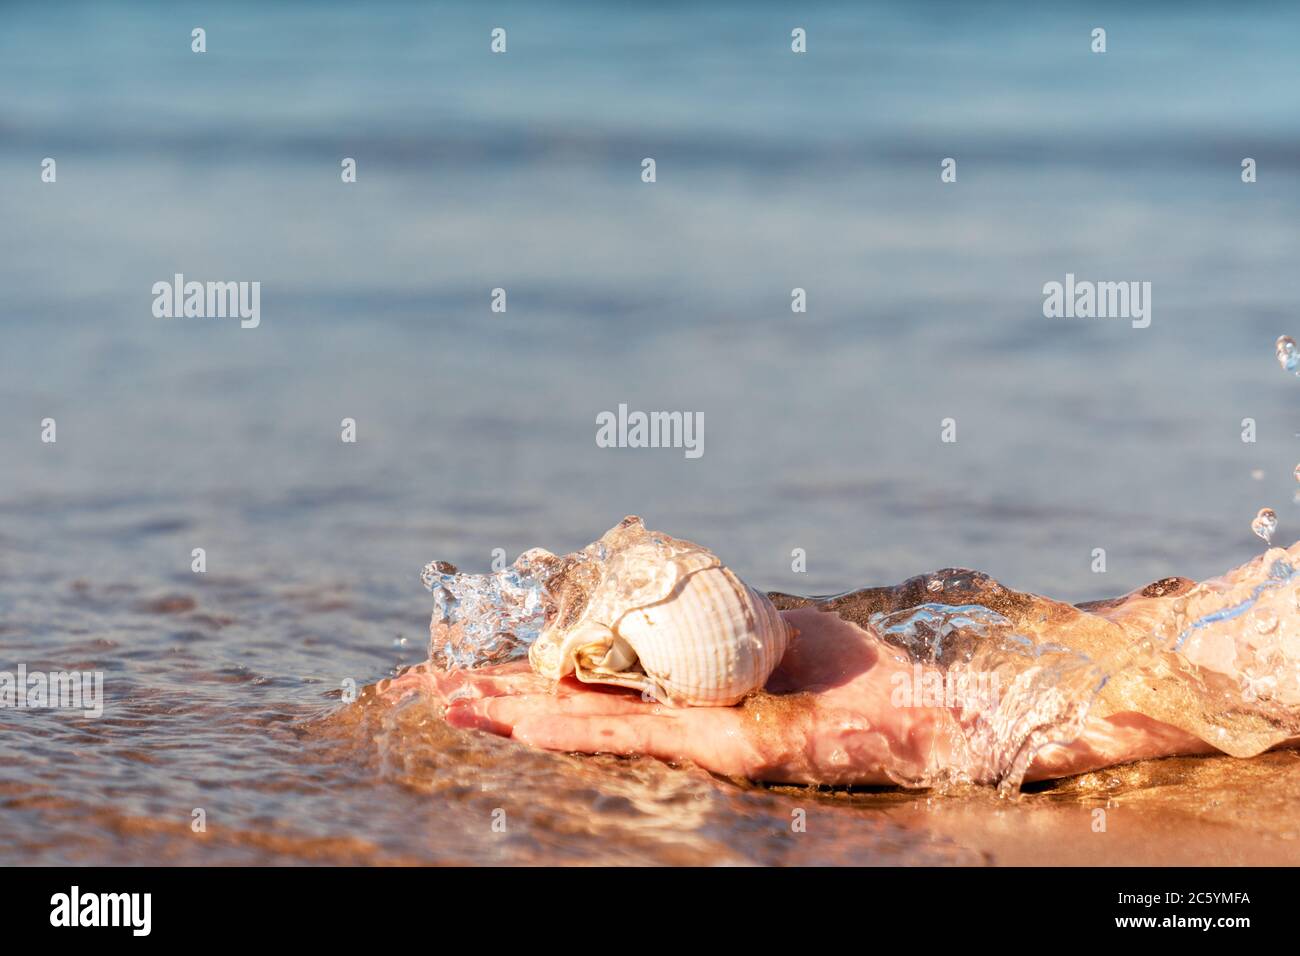 Main est en gravant une coquille de mer de l'eau claire comme le cristal à la plage de sable doré à Antalya. Photo de haute qualité Banque D'Images